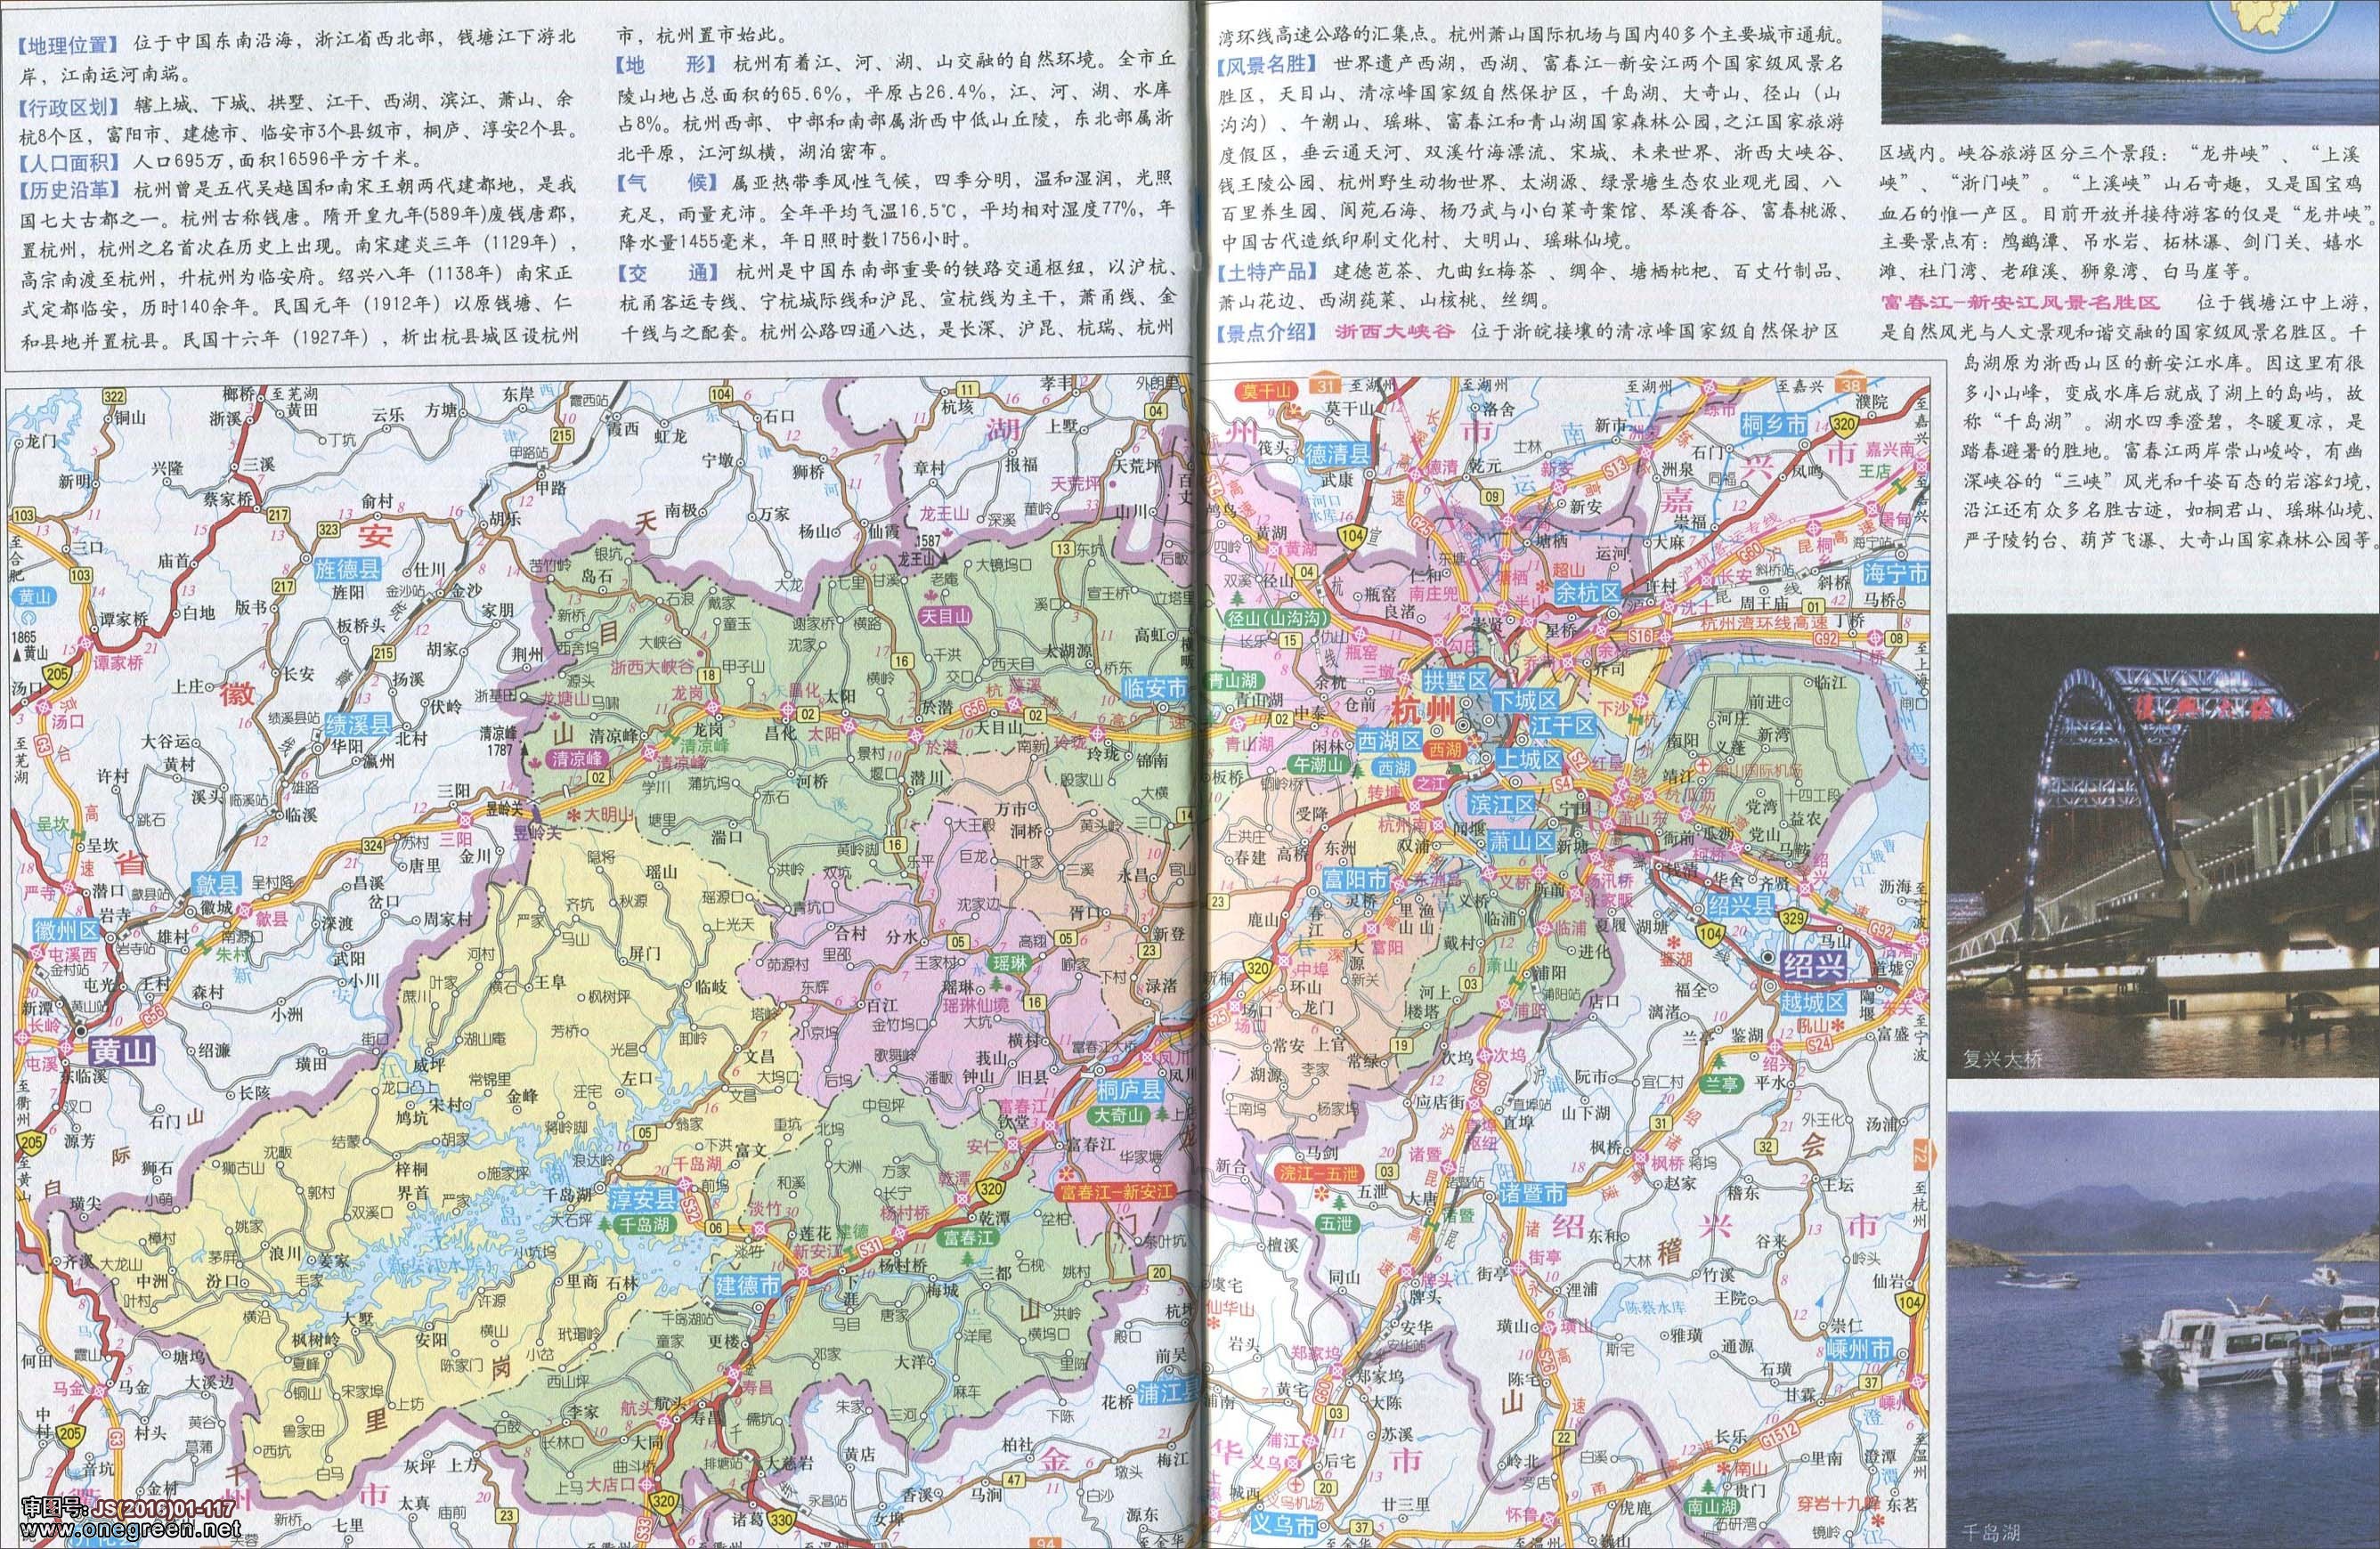 湖州  温州  嘉兴  金华  衢州  台州 上一张地图: 没有了  | 杭州图片